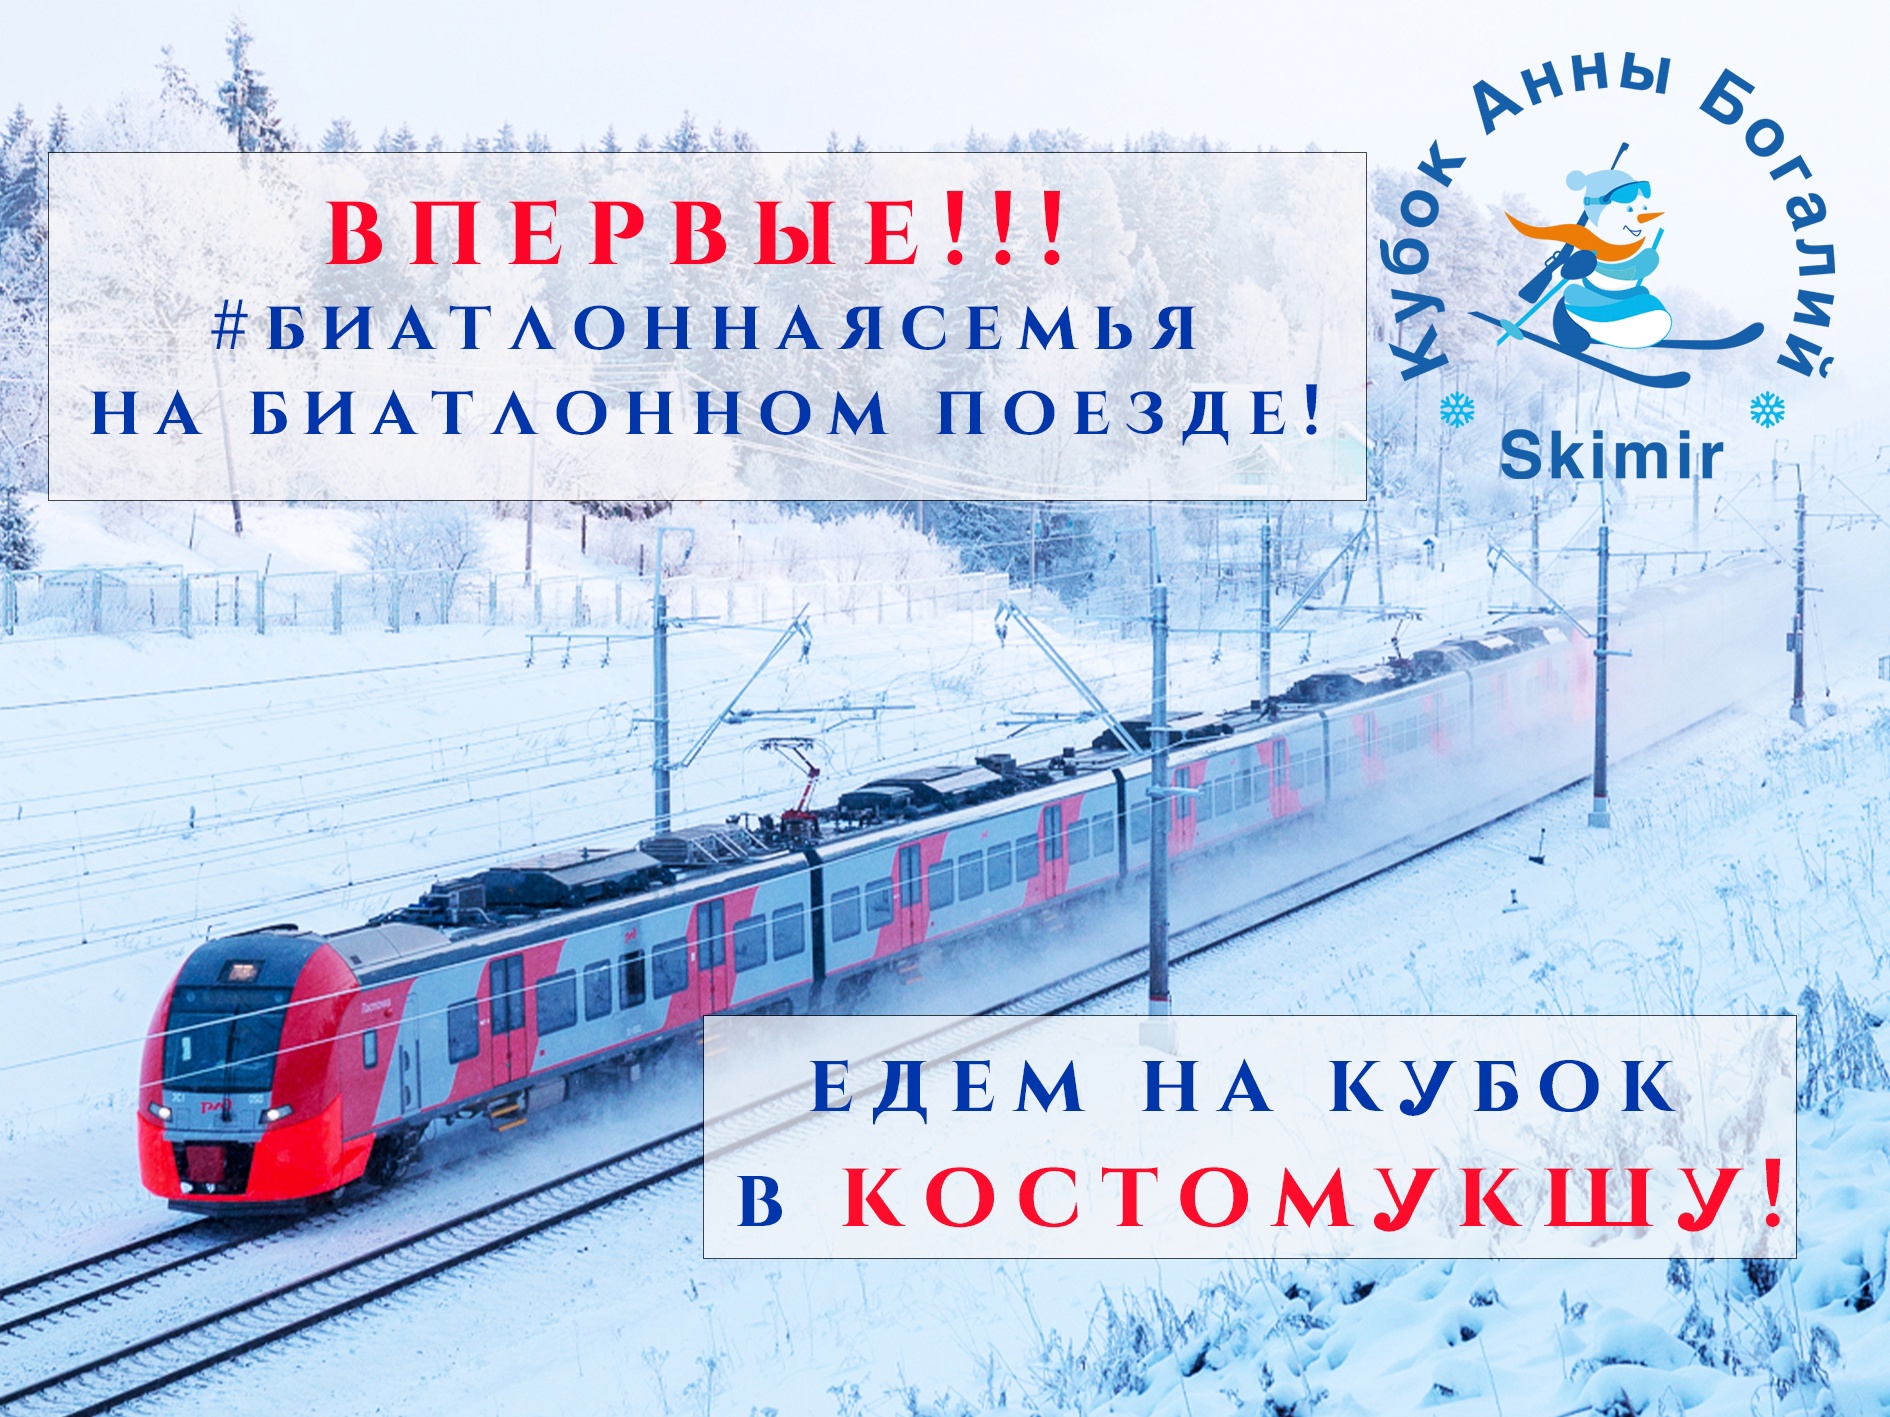 Специальный «биатлонный» поезд отправится из Москвы прямо в Костомукшу